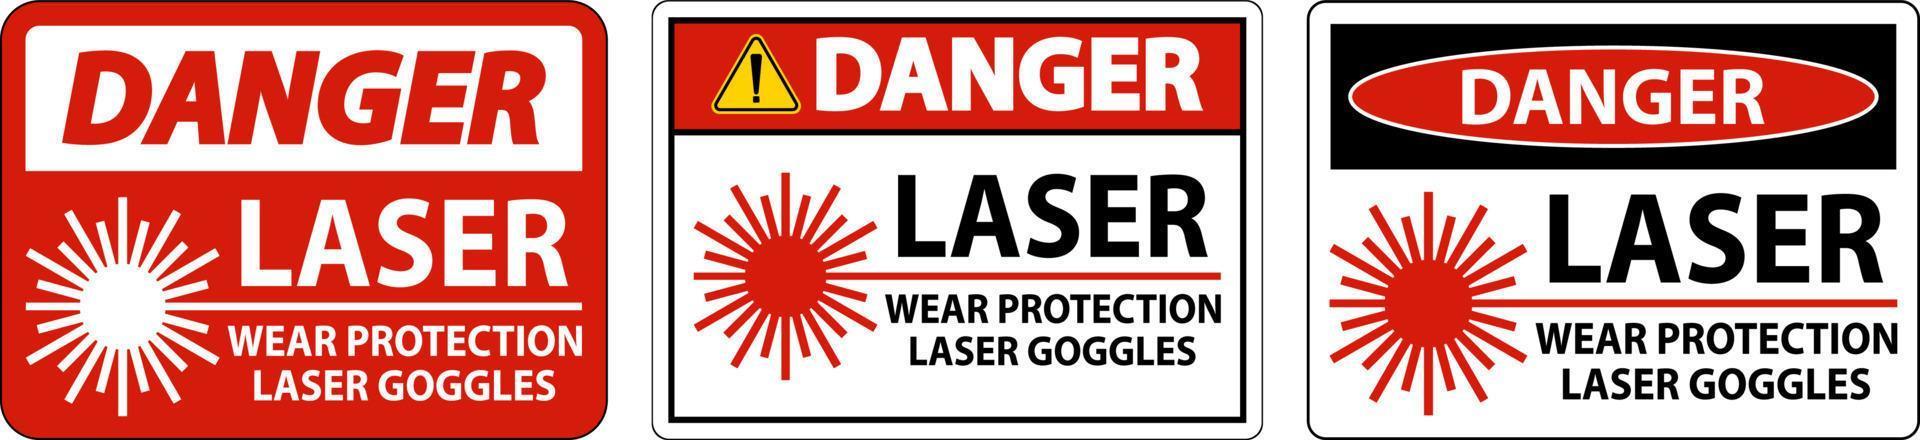 Danger laser porter des lunettes de protection laser signe sur fond blanc vecteur